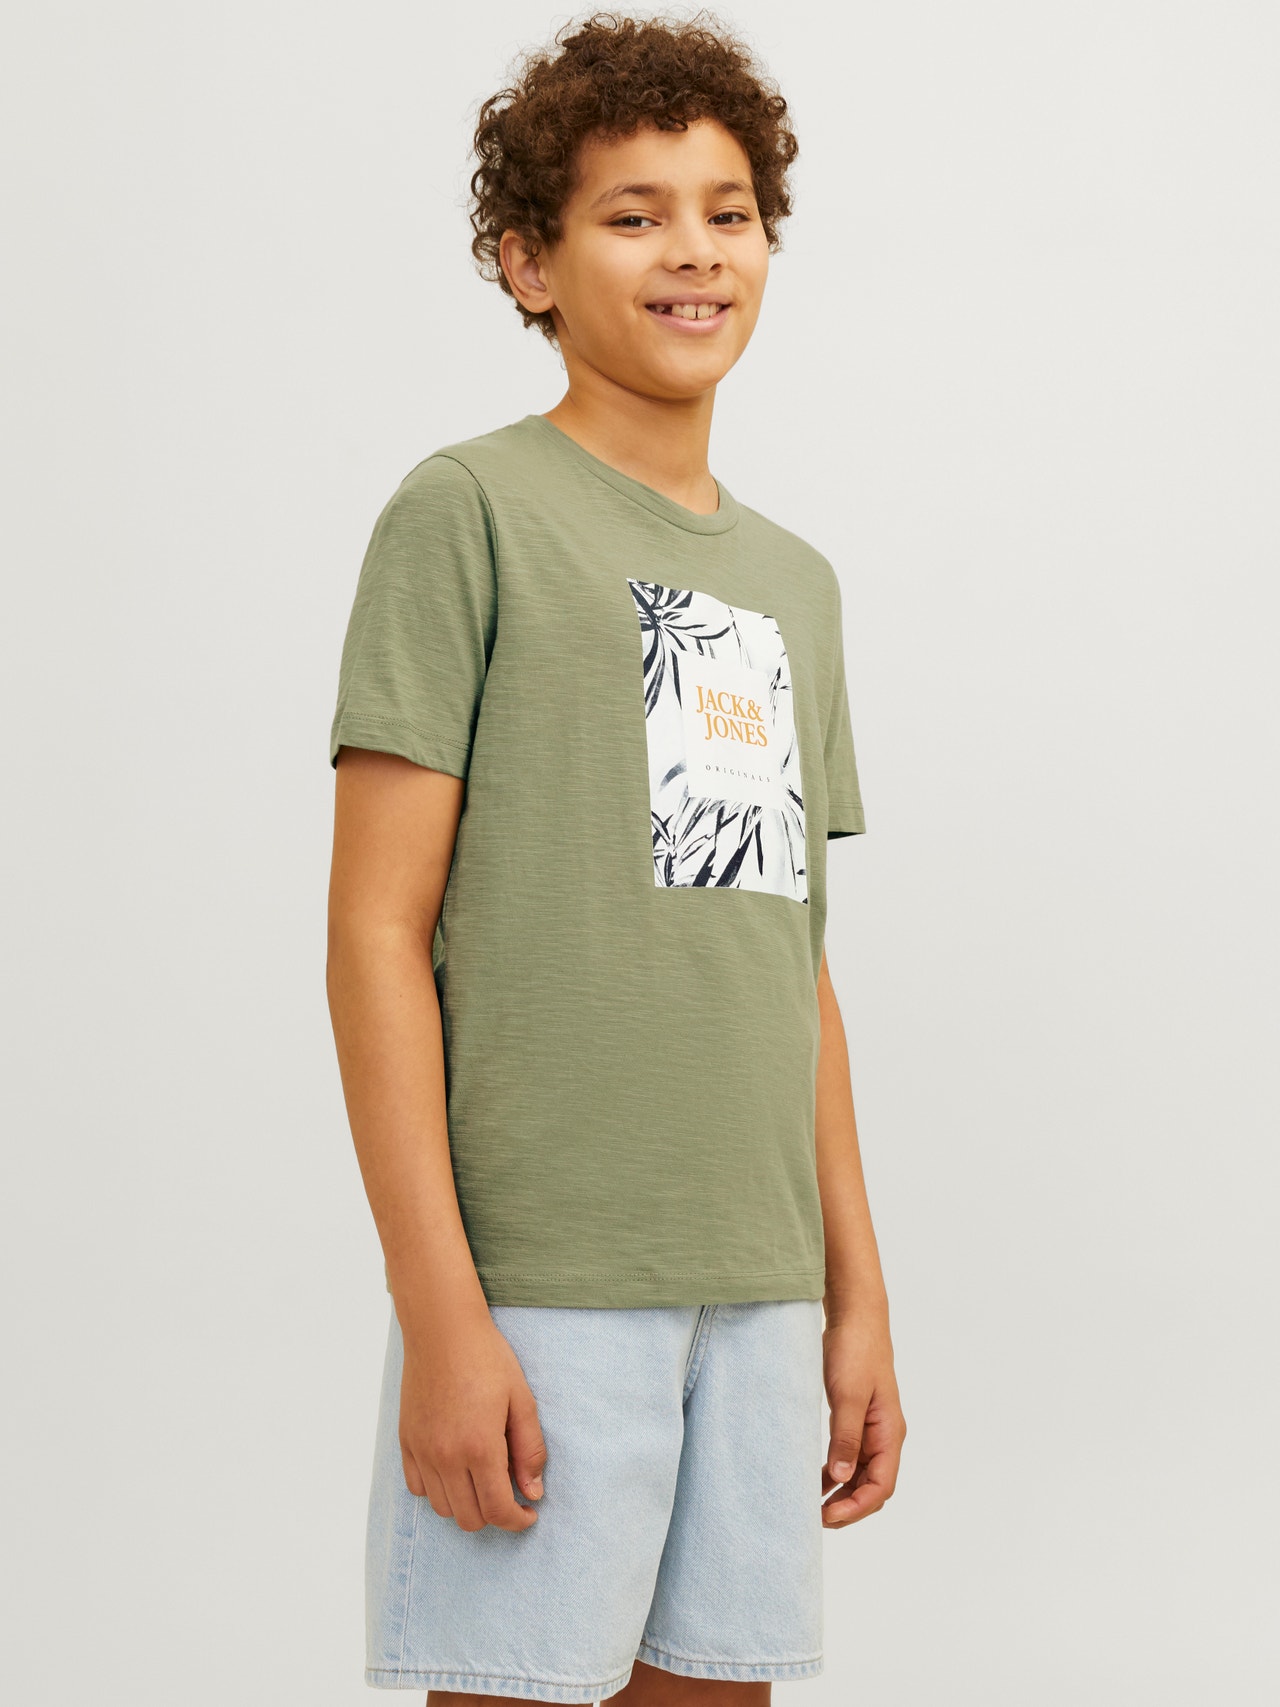 Jack & Jones T-shirt Estampar Para meninos -Oil Green - 12258234